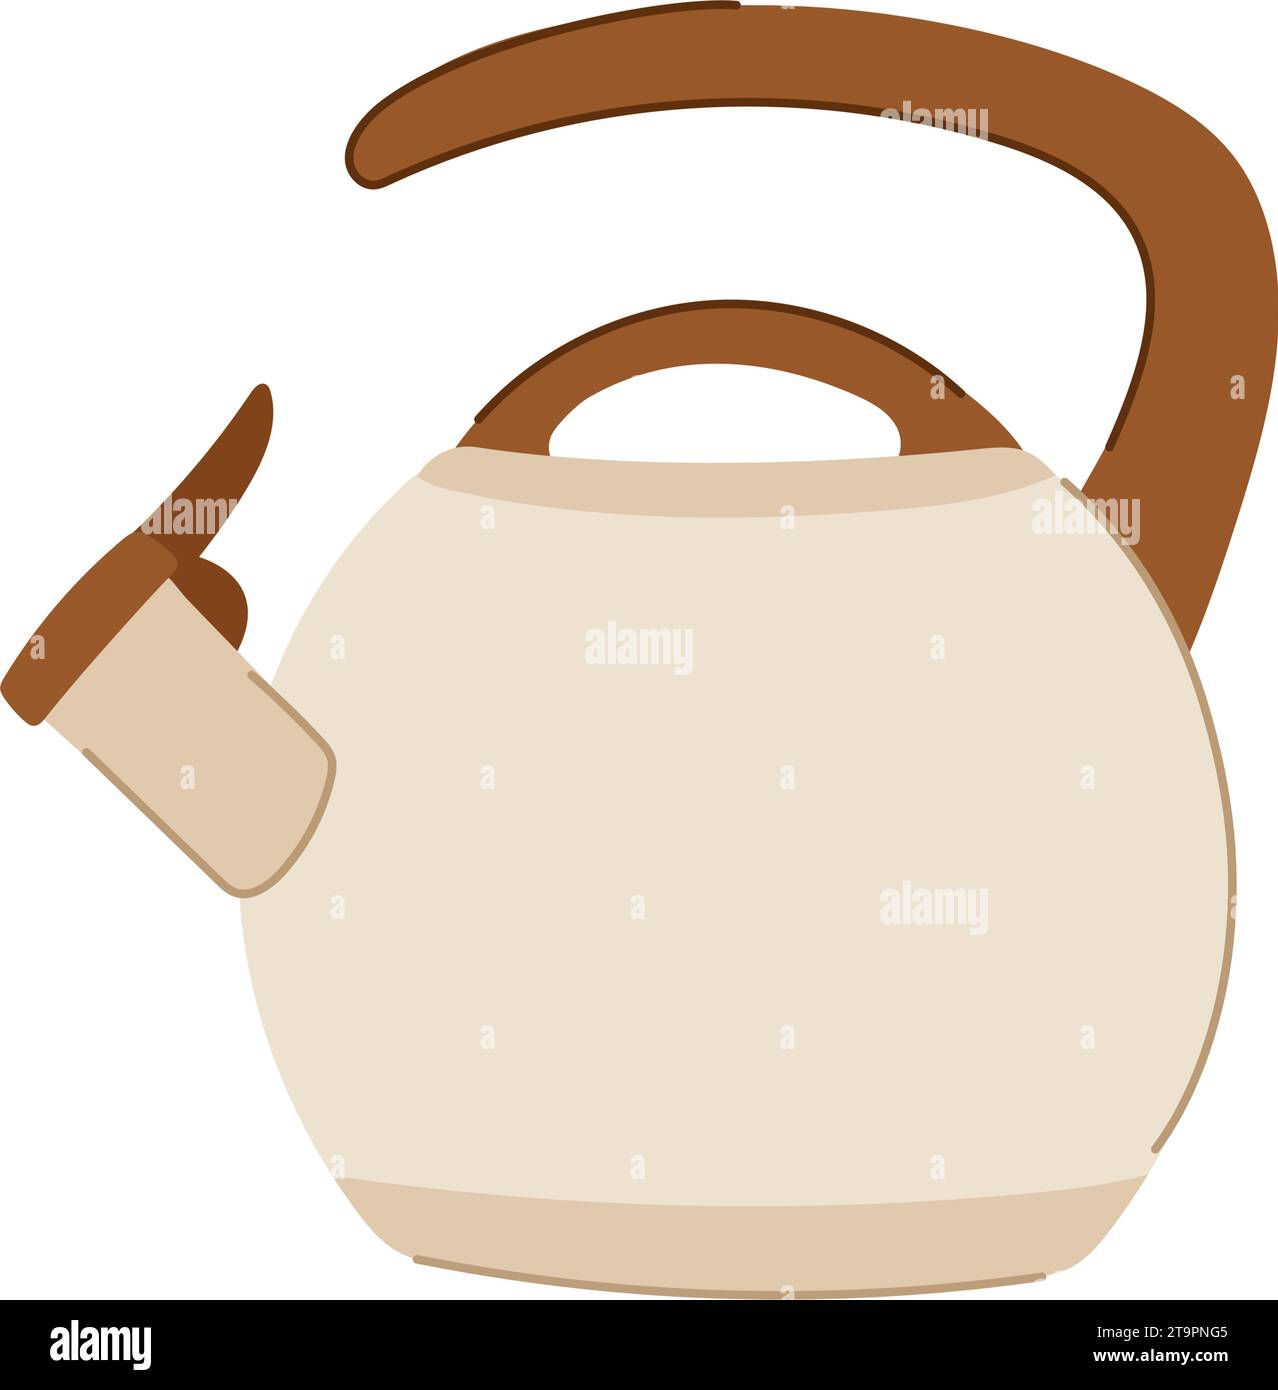 kitchen kettle cartoon vector illustration Stock Vector